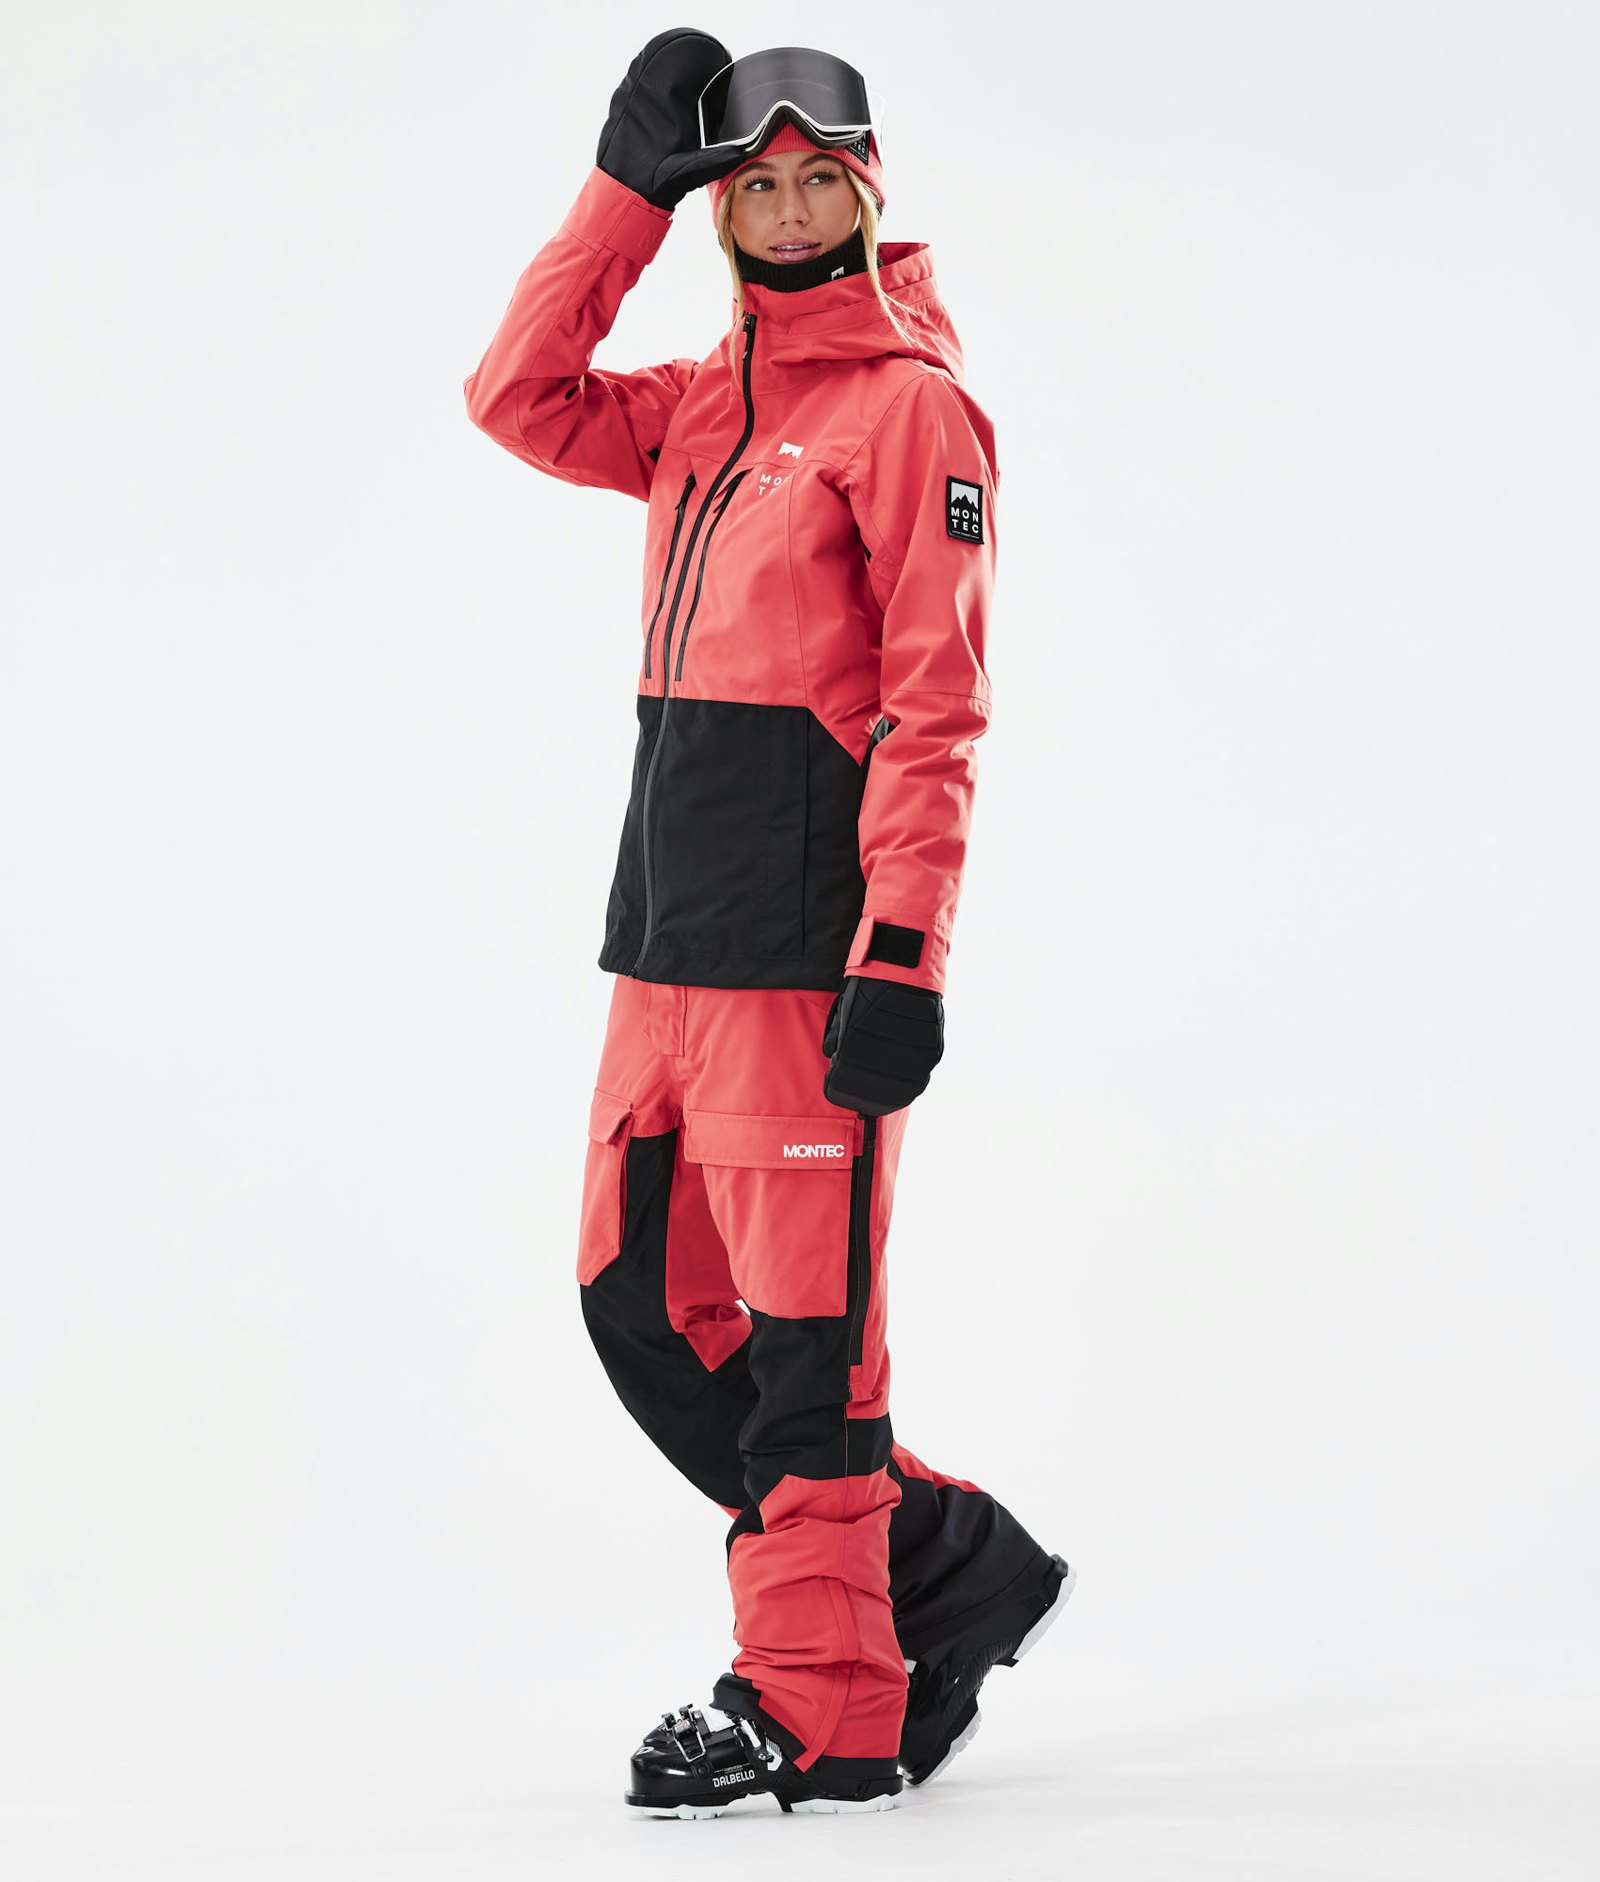 Montec Moss W 2021 Ski Jacket Women Coral/Black